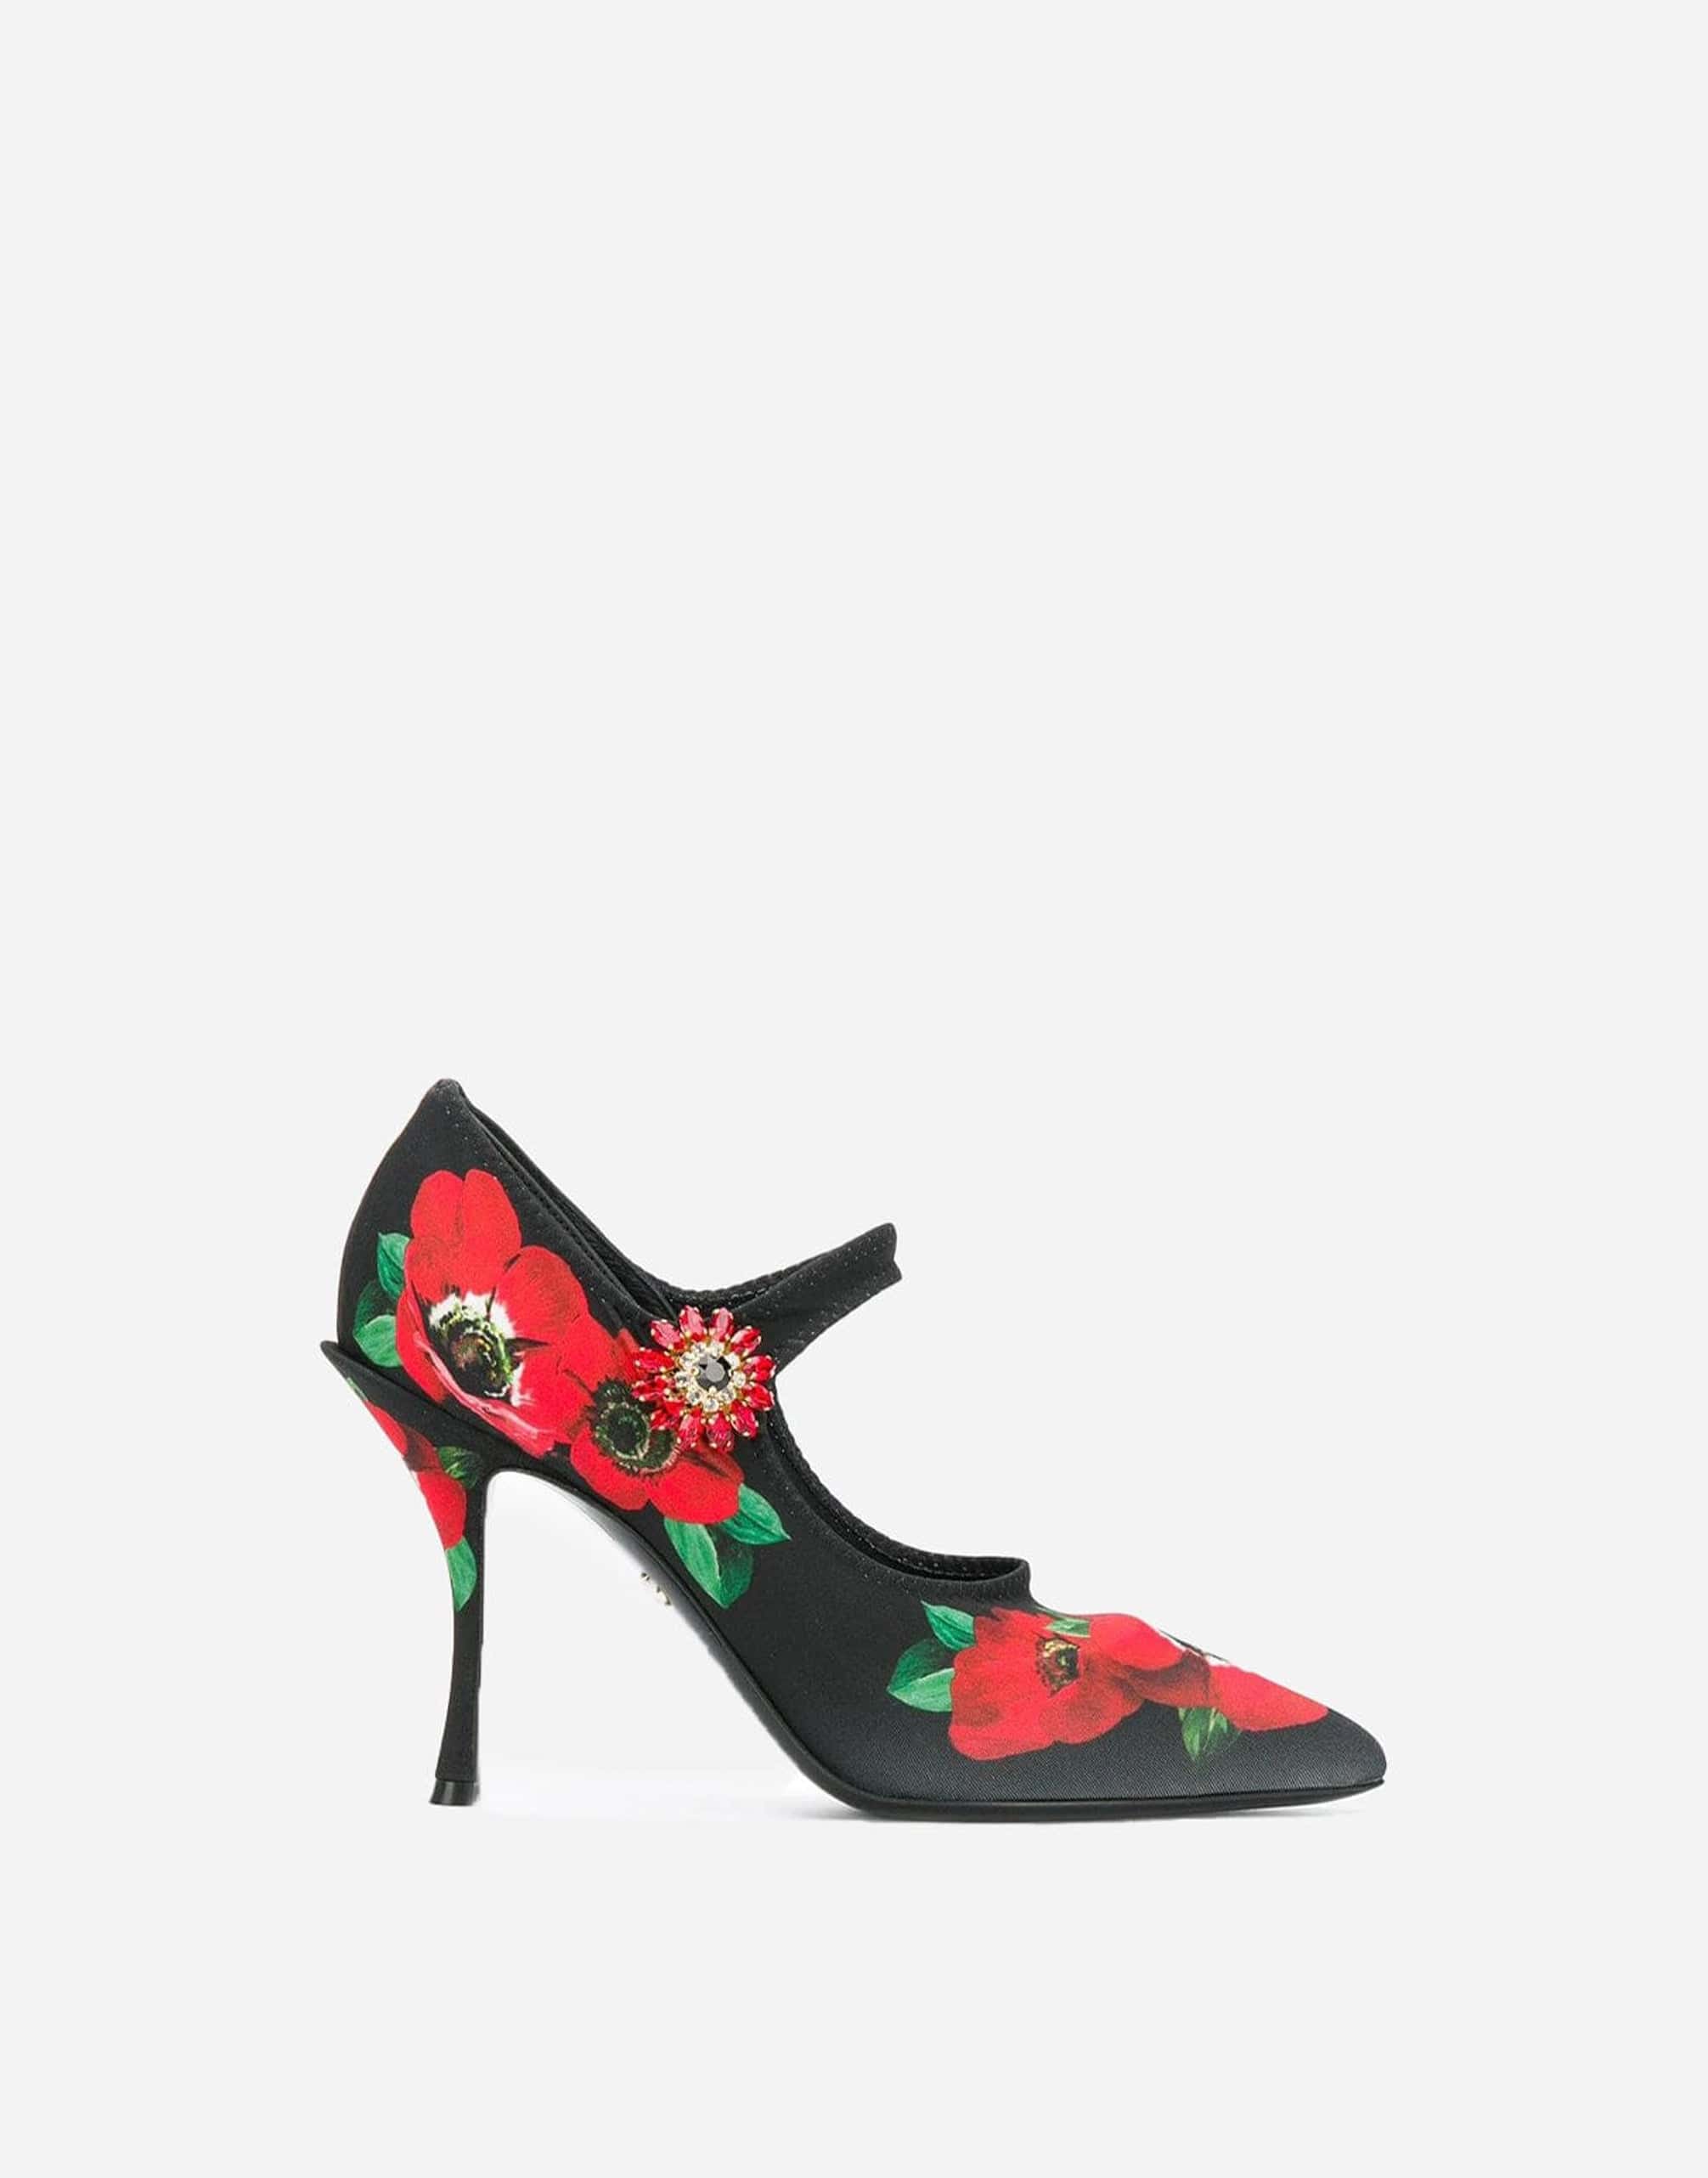 Dolce & Gabbana Mary Jane Floral Embellished Pumps